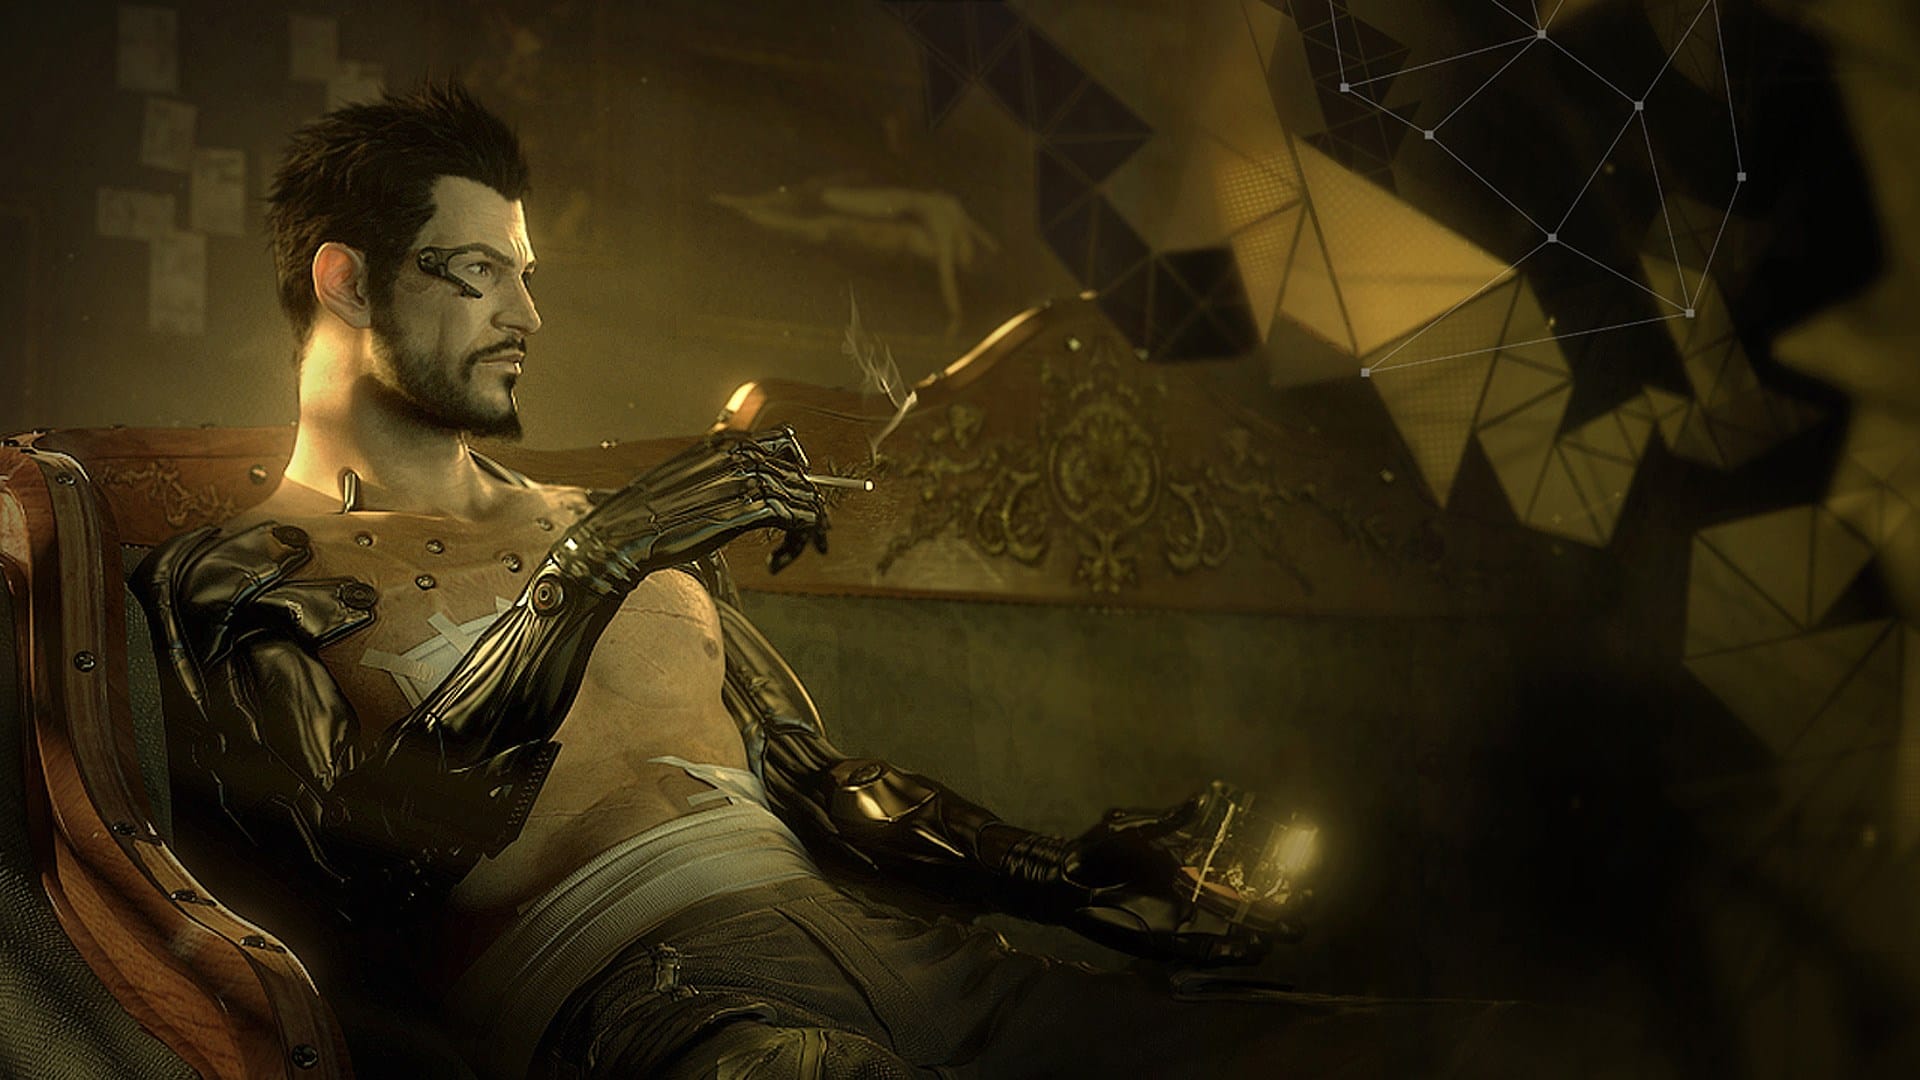 خالق بازی Deus Ex در حال ساخت عنوانی جدید است